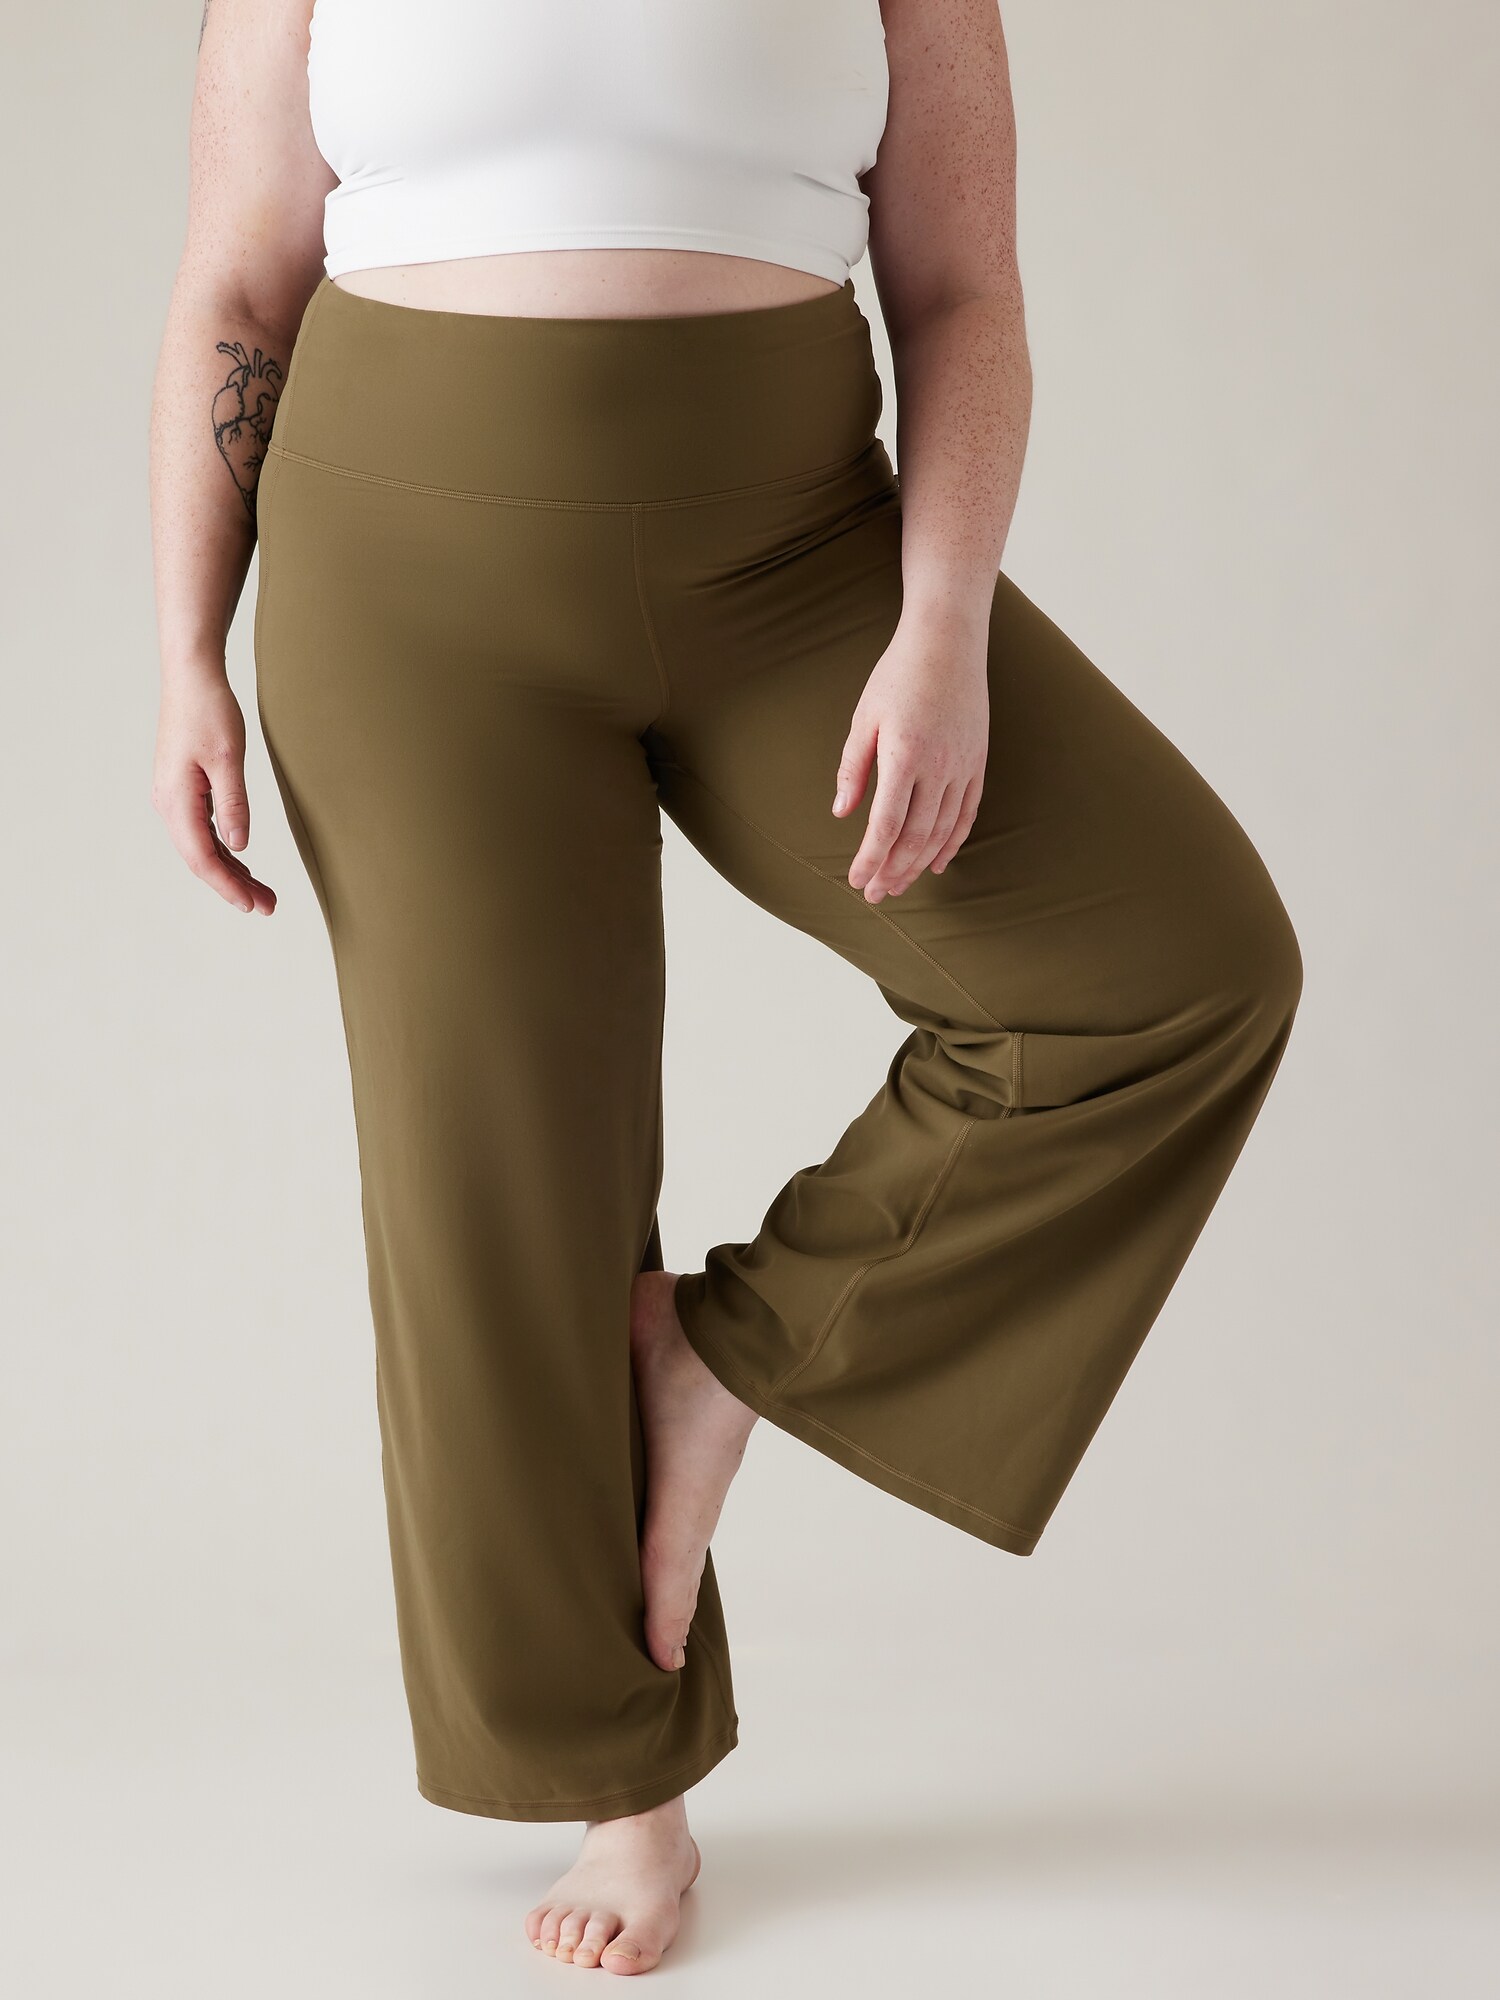 Yoga Cargo Pants-women's Pants-cargo Pants-full Length Pants-wide Leg Pants-high  Waisted Pants-fold Over Yoga Pants-green Cotton Pants-pants -  Canada